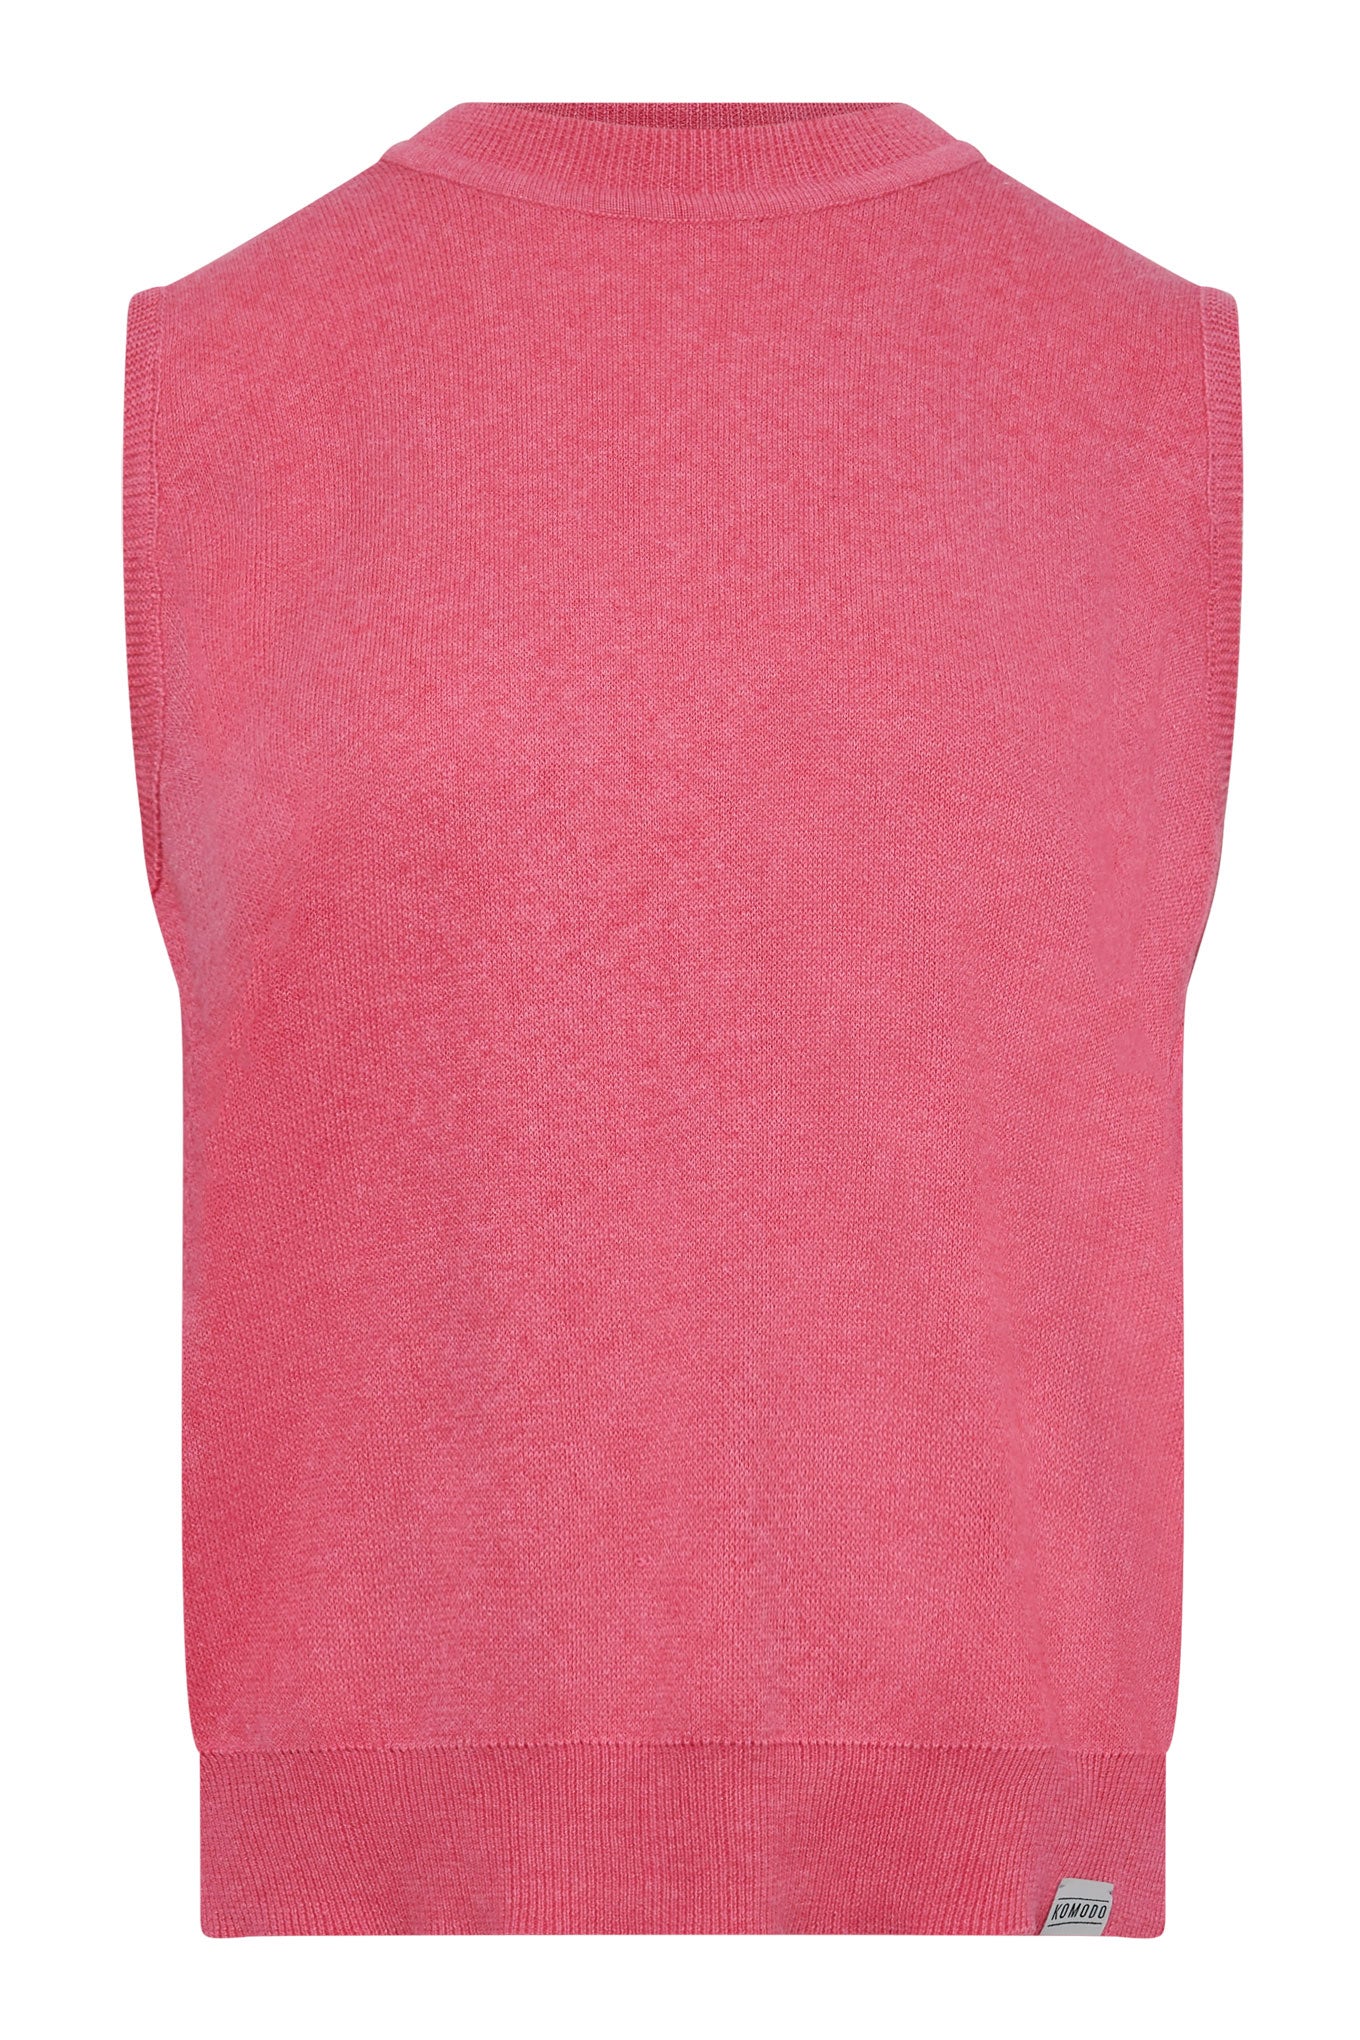 Pinkes Top MILA aus Baumwolle & Tencel von Komodo